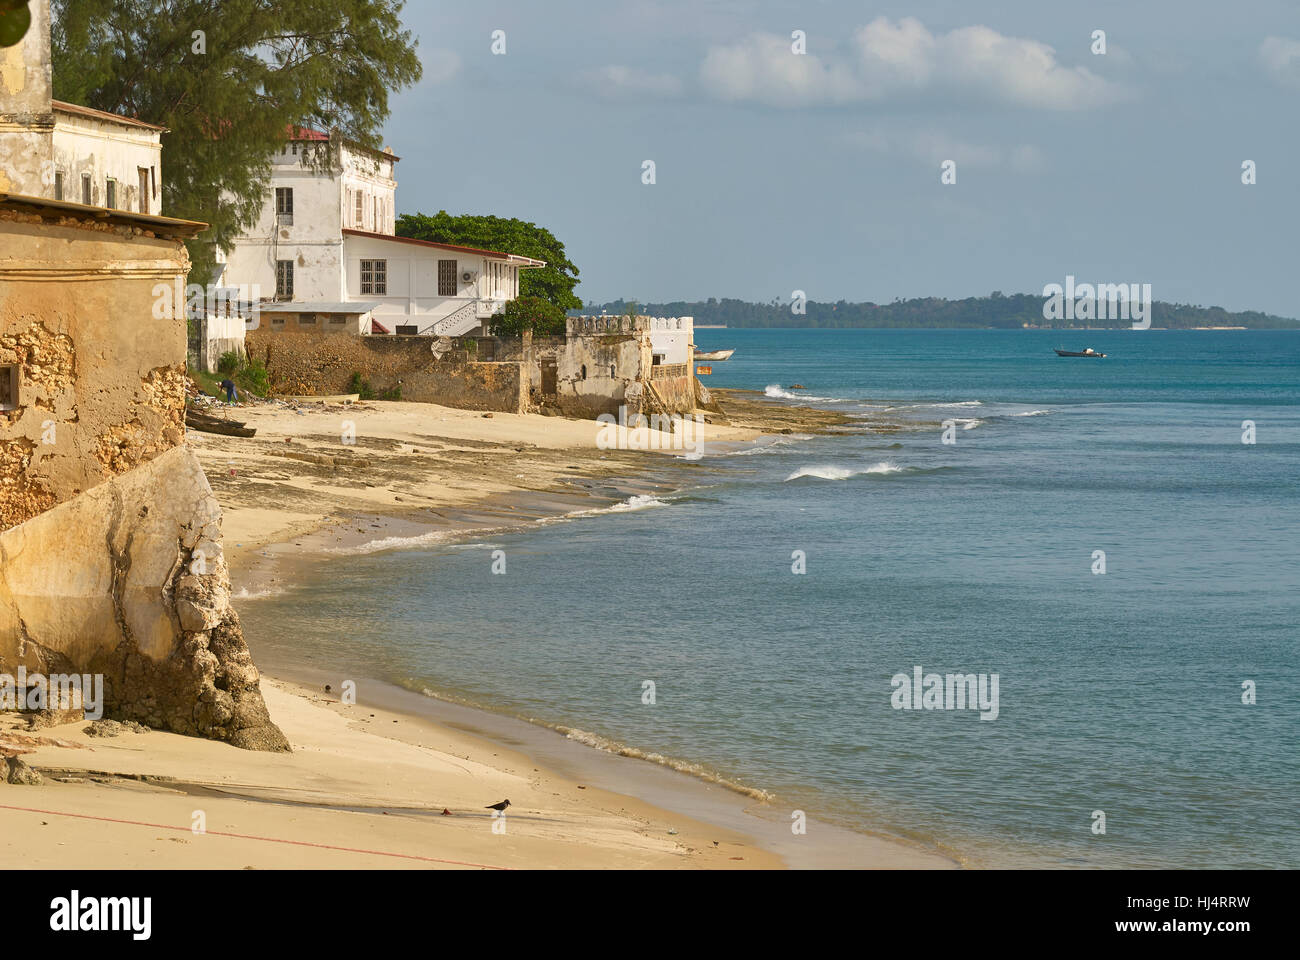 Waterfront view Stonetown, Zanzibar Stock Photo